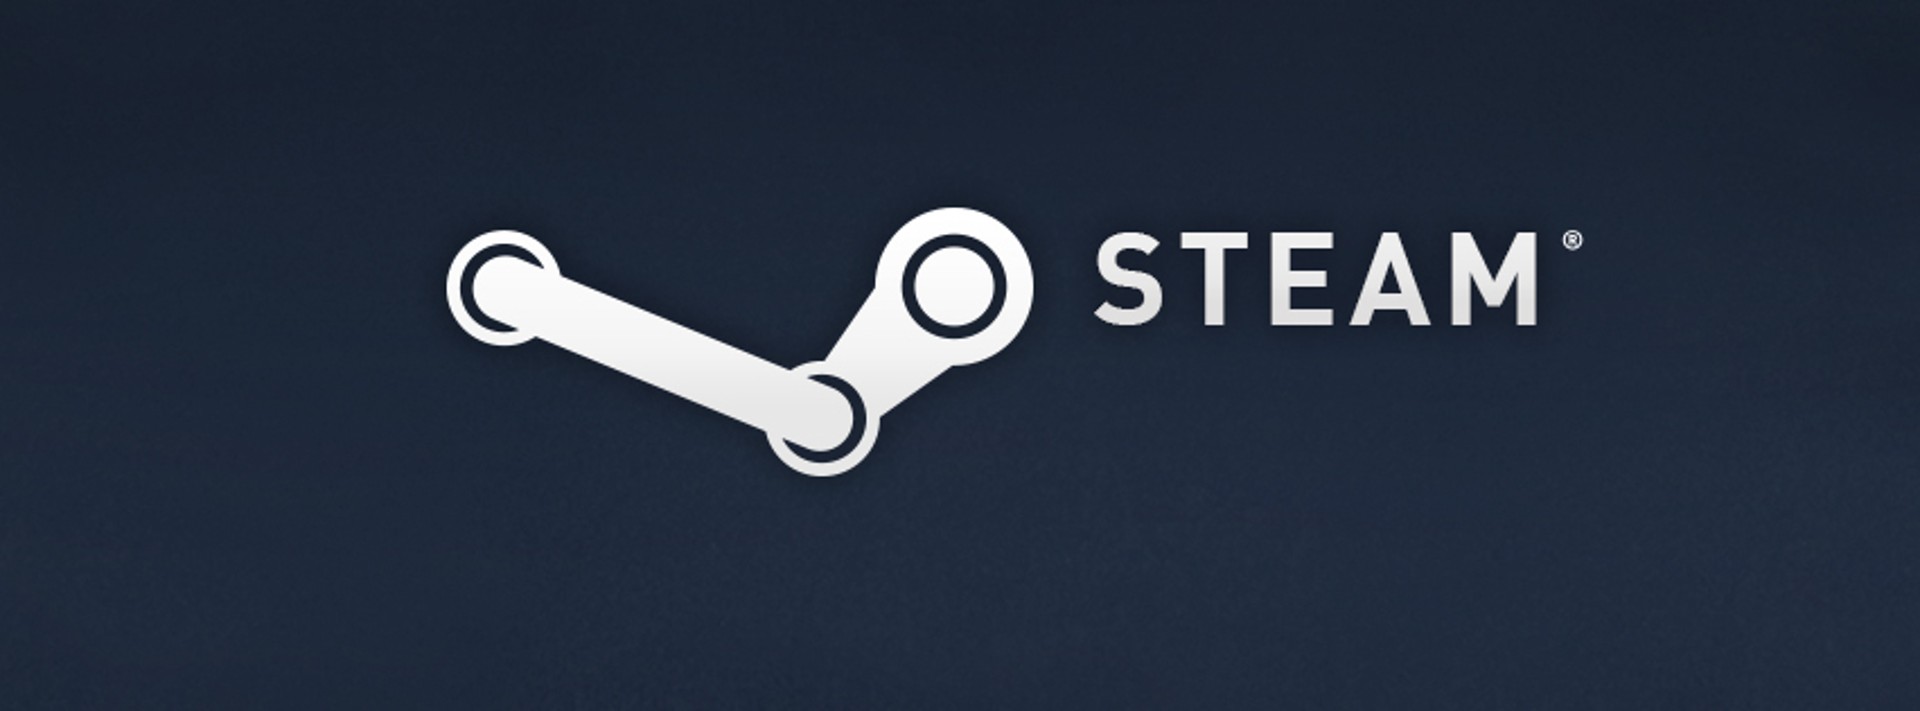 Valve เพิ่มกฎใหม่เกี่ยวกับการลดราคาเกมผ่าน Steam